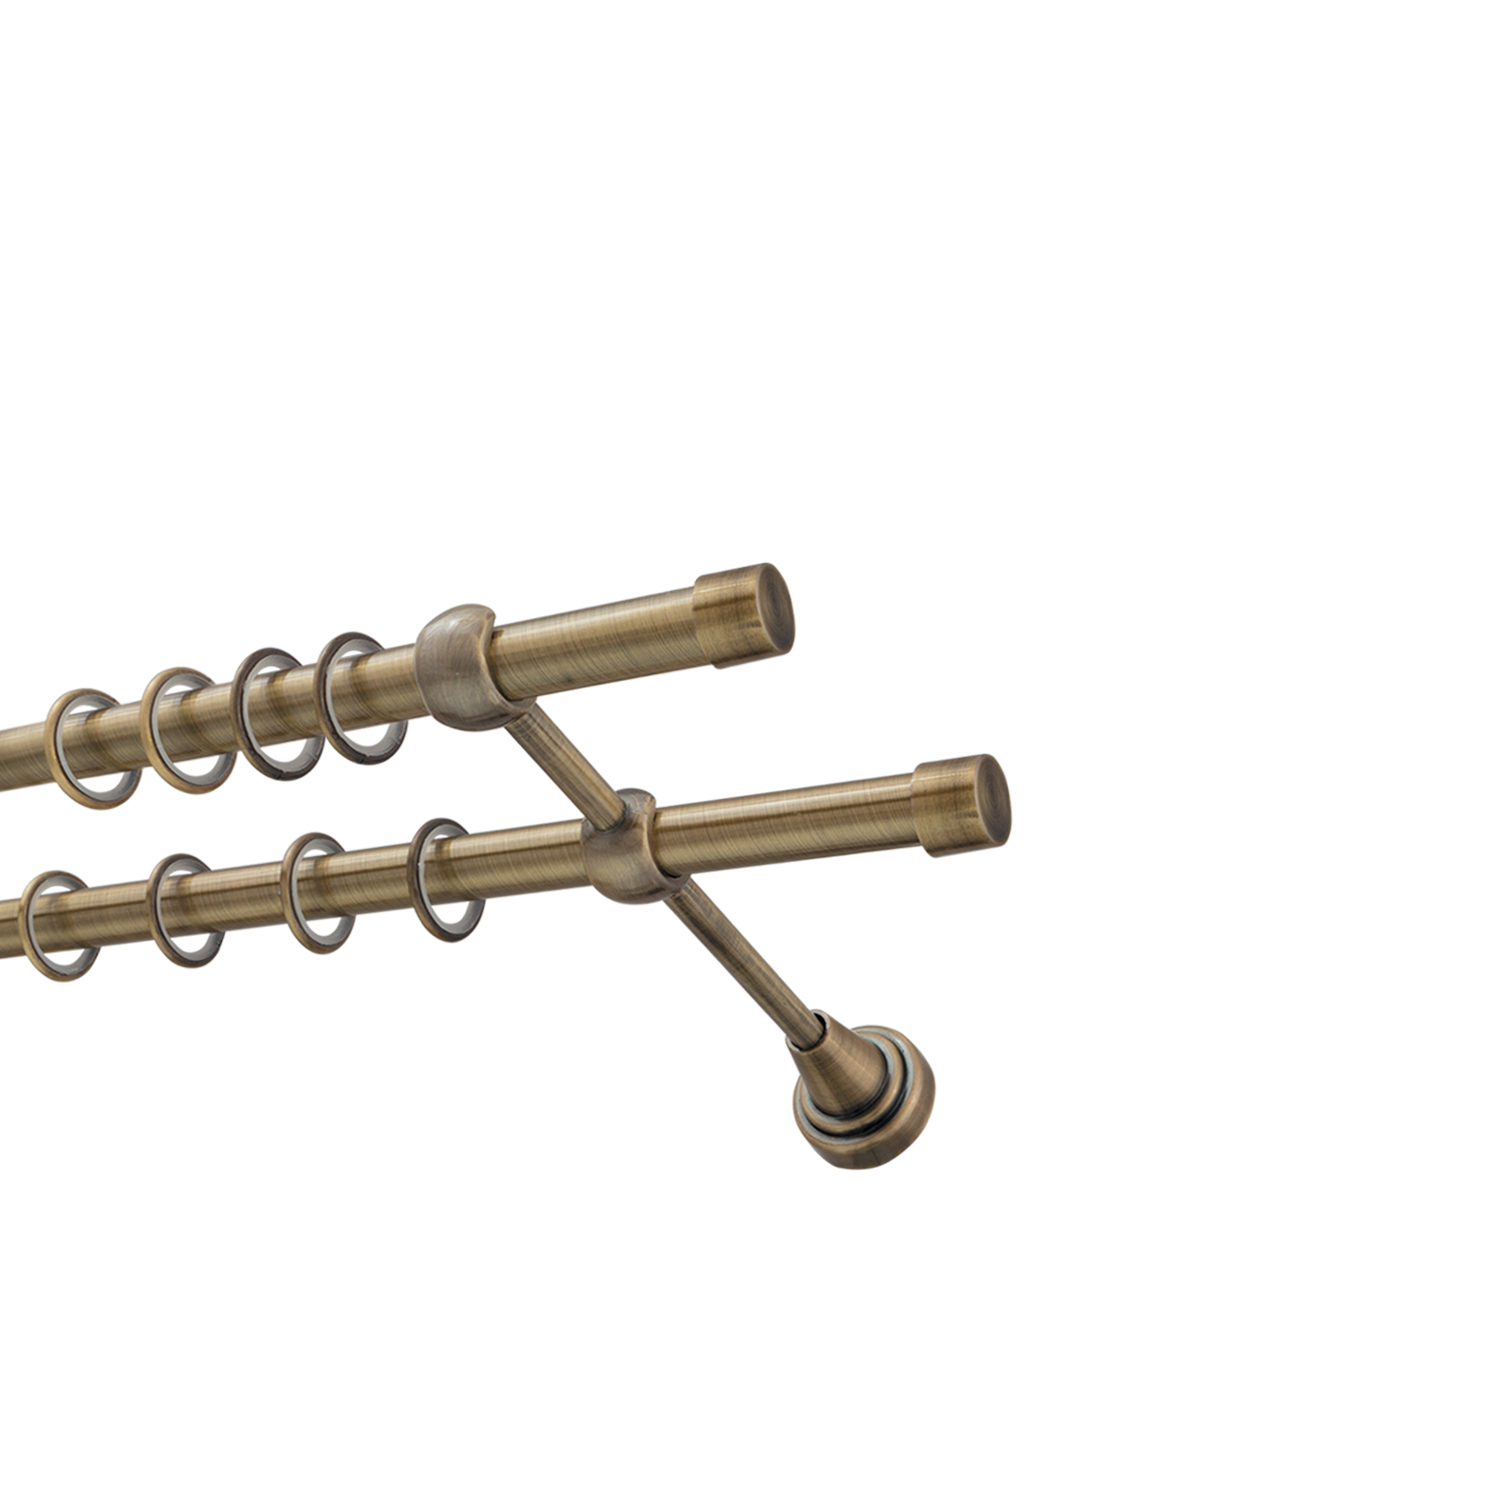 Металлический карниз для штор Заглушка, двухрядный 16/16 мм, бронза, гладкая штанга, длина 160 см - фото Wikidecor.ru